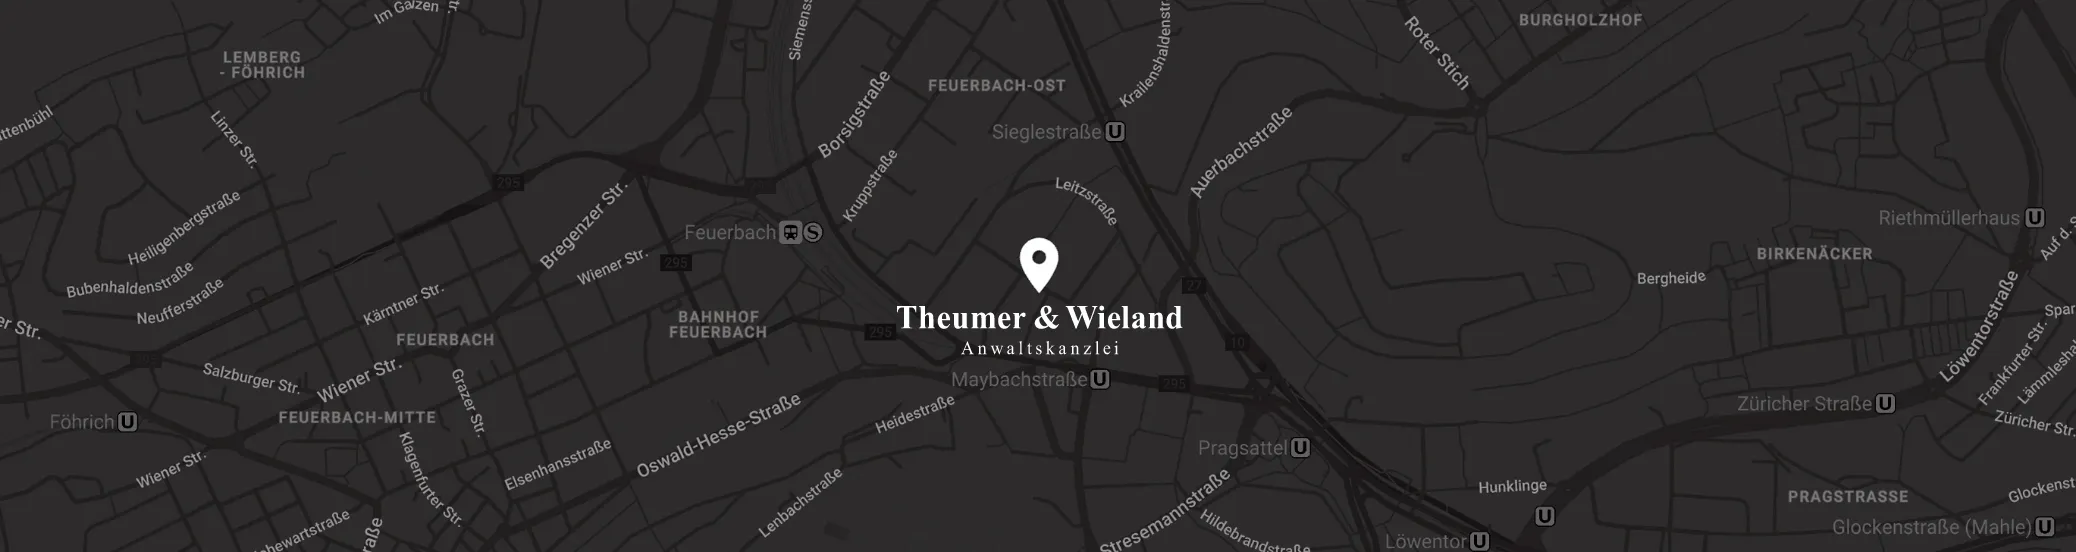 Anfahrt Theumer & Wieland Anwaltskanzlei Stuttgart